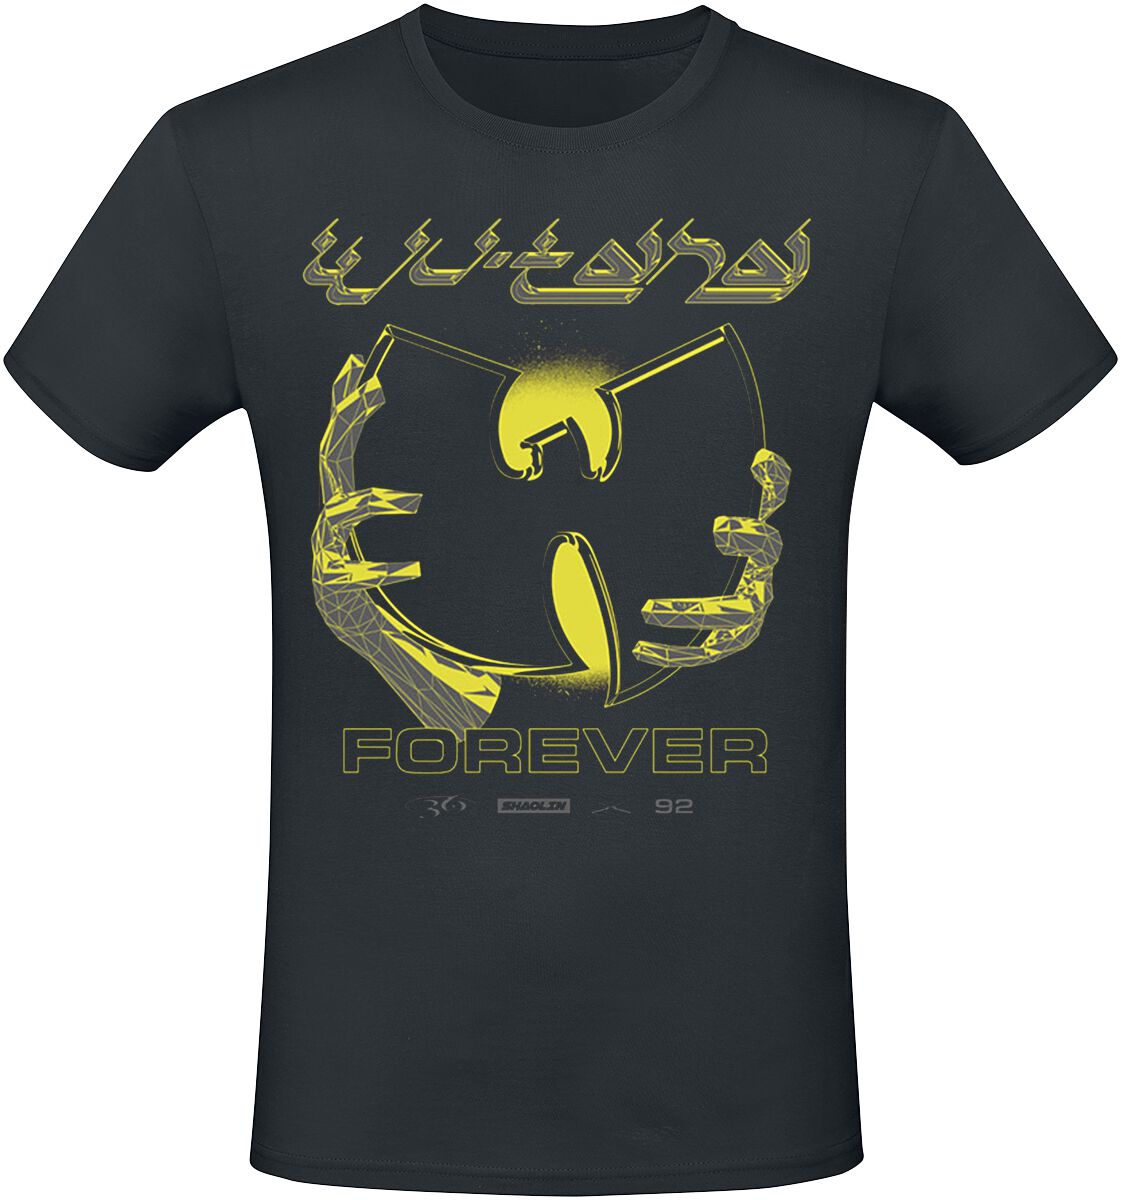 Wu-Tang Clan T-Shirt - Forever Chrome - S bis M - für Männer - Größe S - schwarz  - Lizenziertes Merchandise!